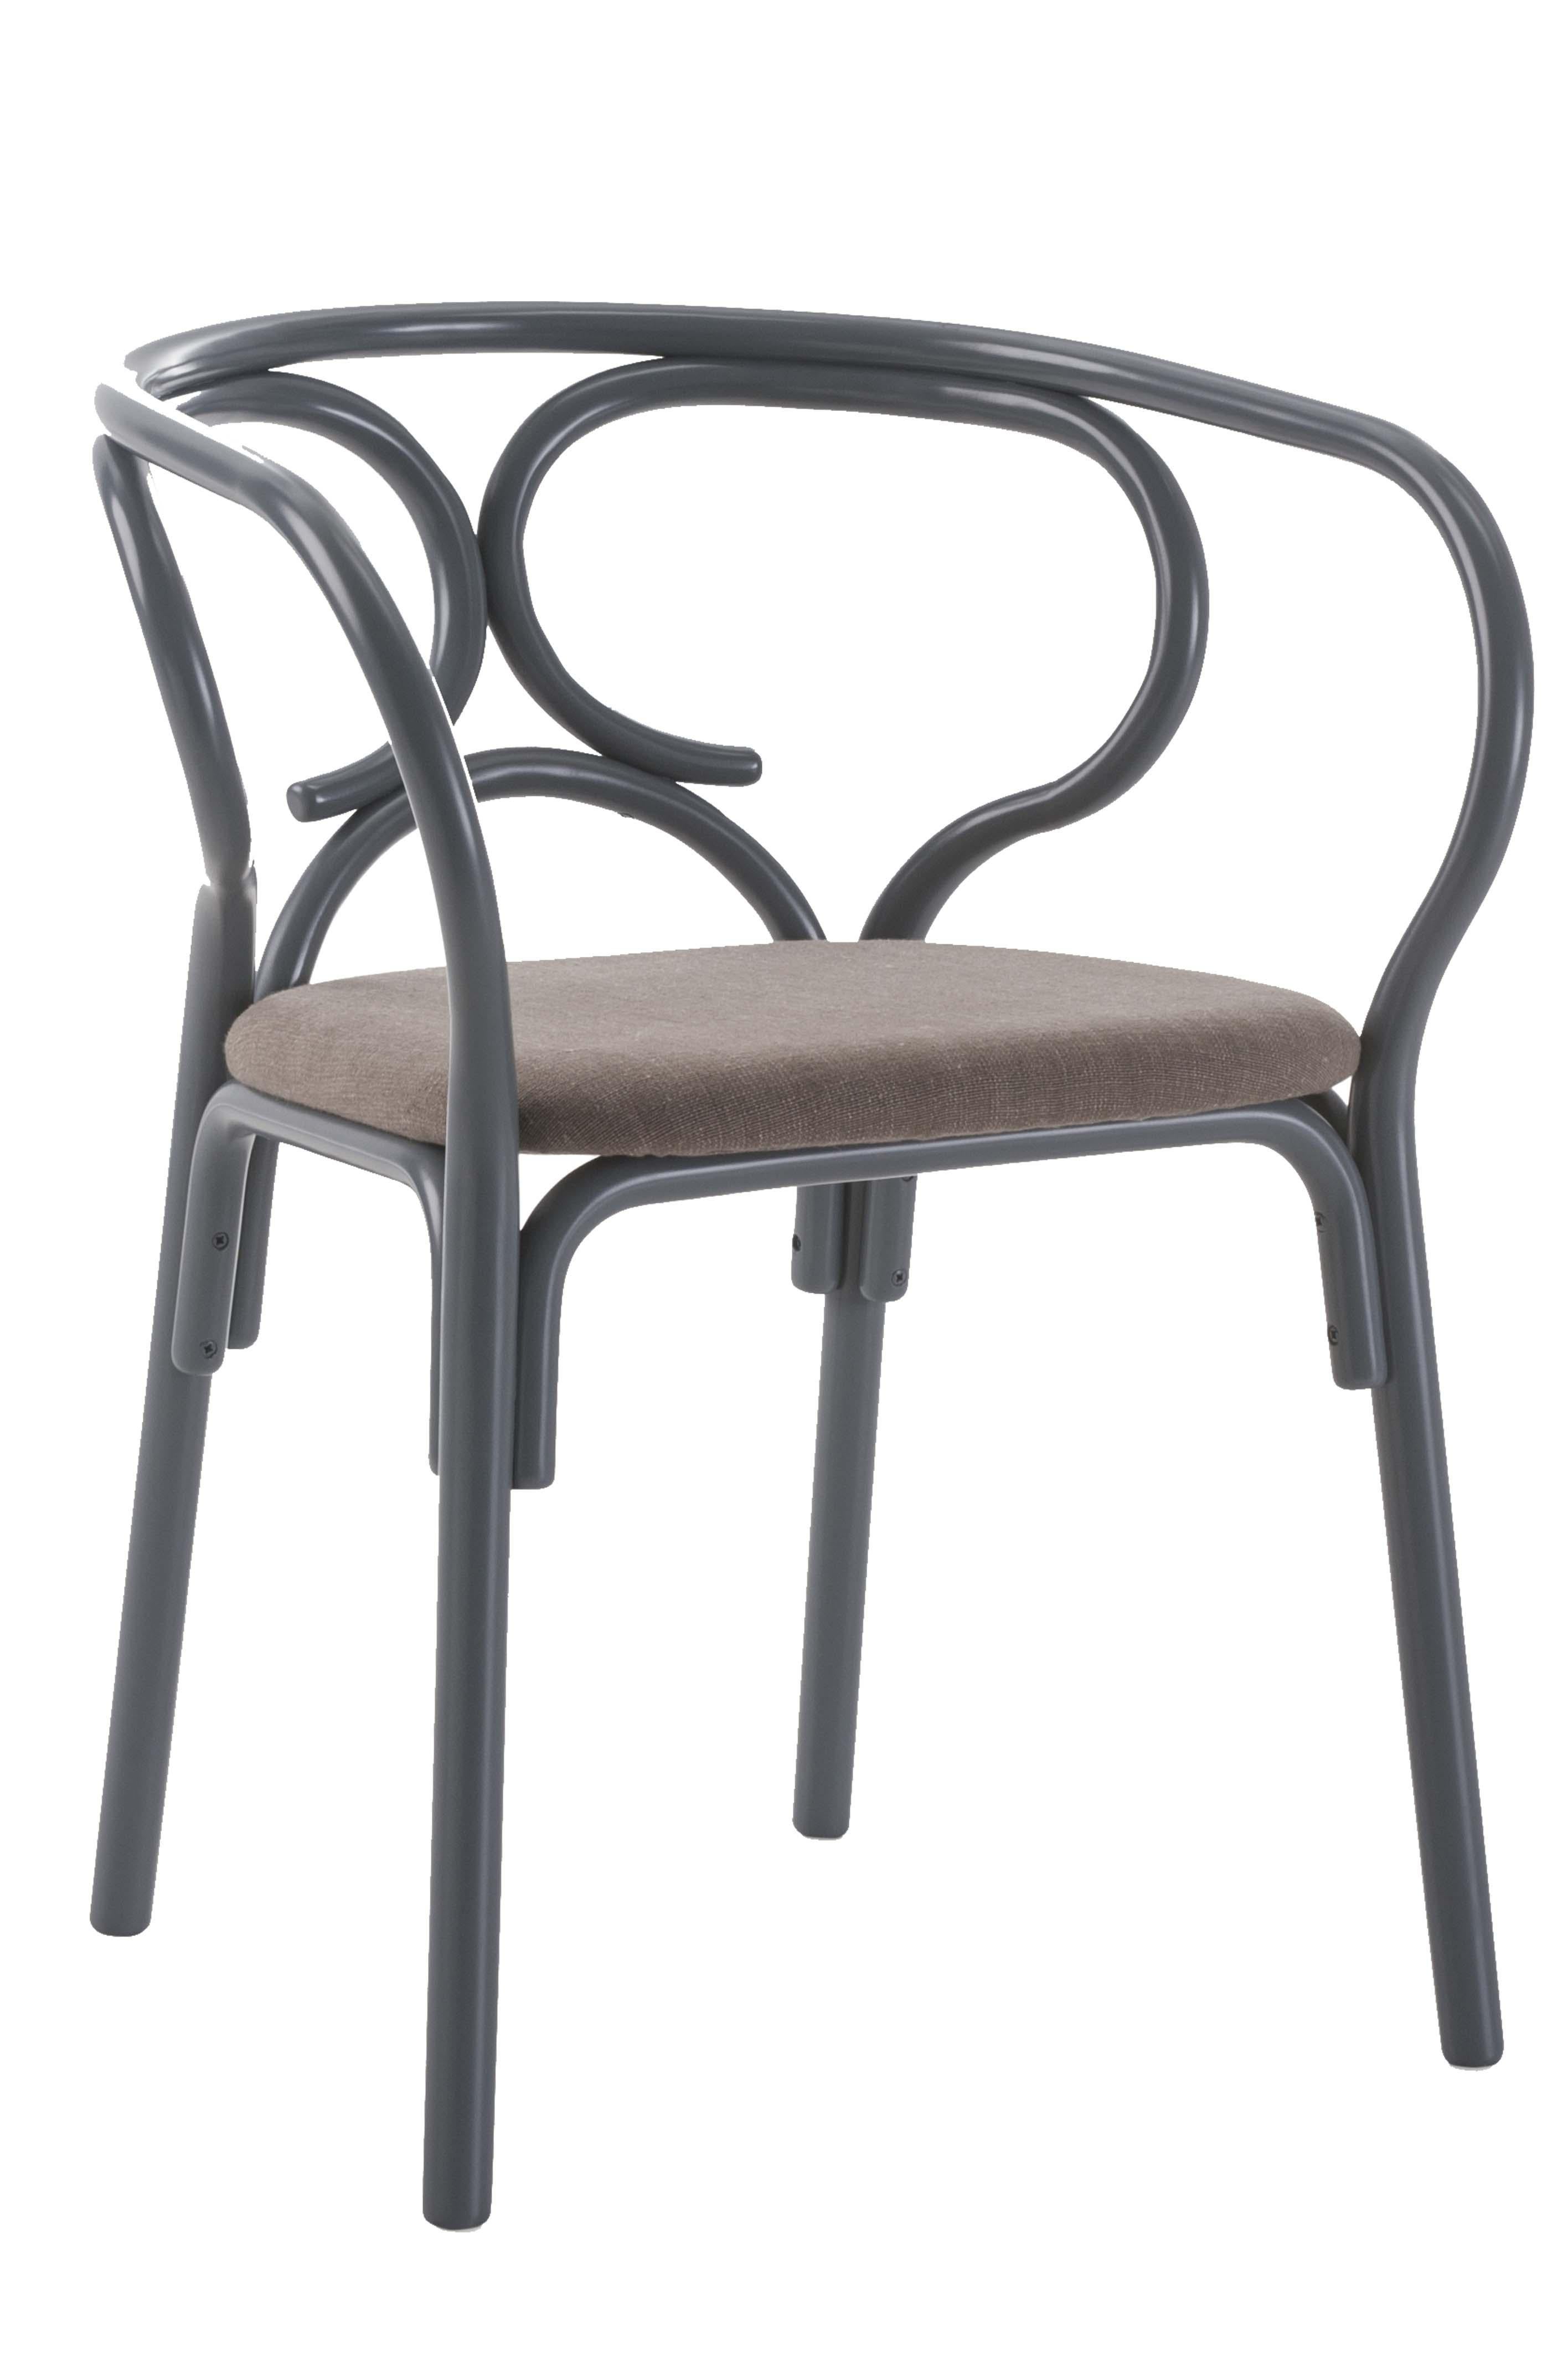 Der Sessel Brezel des kreativen Duos Lucidi Pevere bereichert das Zuhause mit seiner verspielten und vielseitigen Präsenz. Seine hölzerne Struktur ist mit dekorativen, geschwungenen Buchenelementen verziert, die das Profil der Rückenlehne mit einer